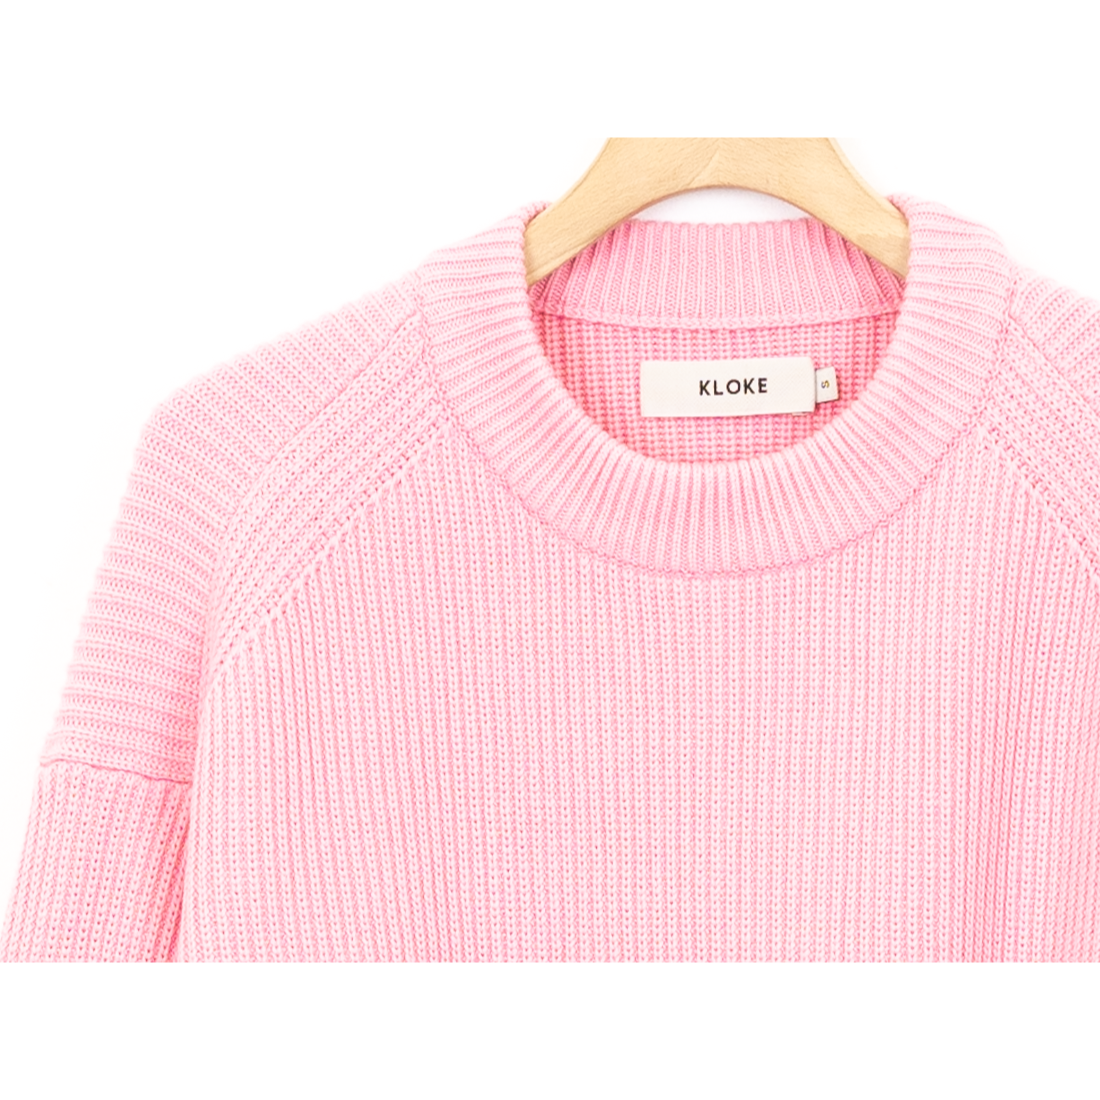 KLOKE / Conceal Crop Knit Sweater